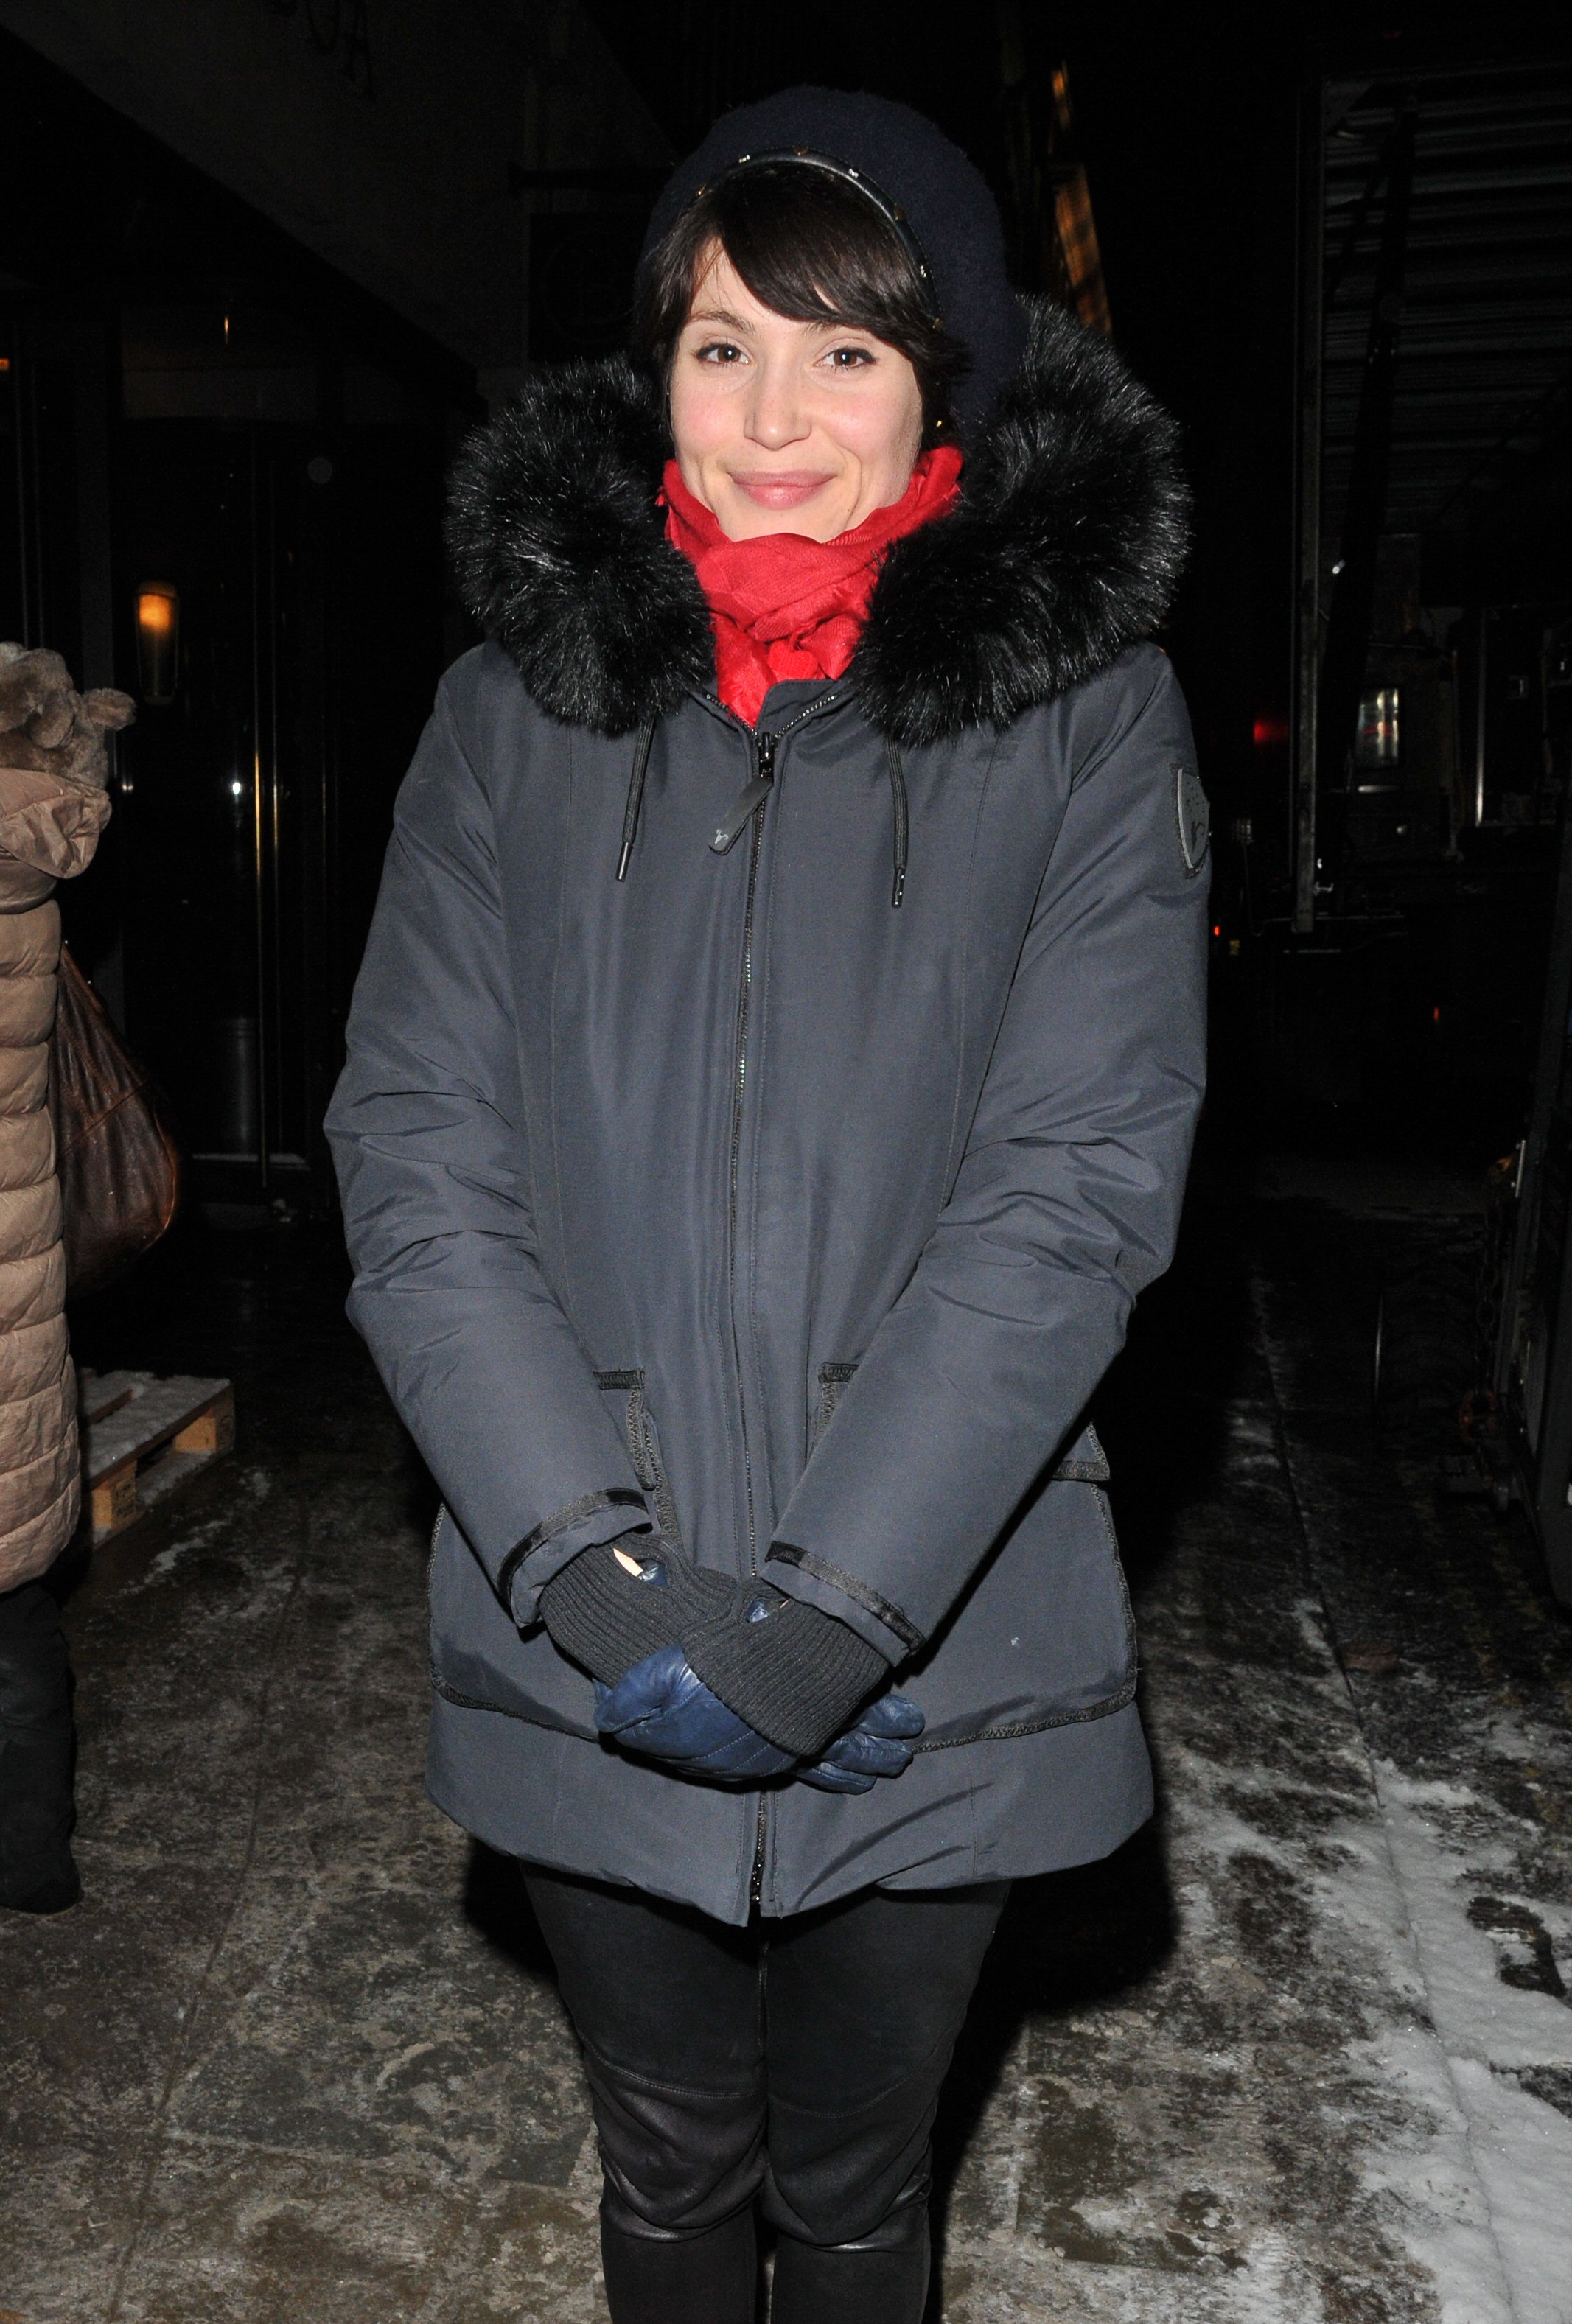 Gemma Arterton out in London